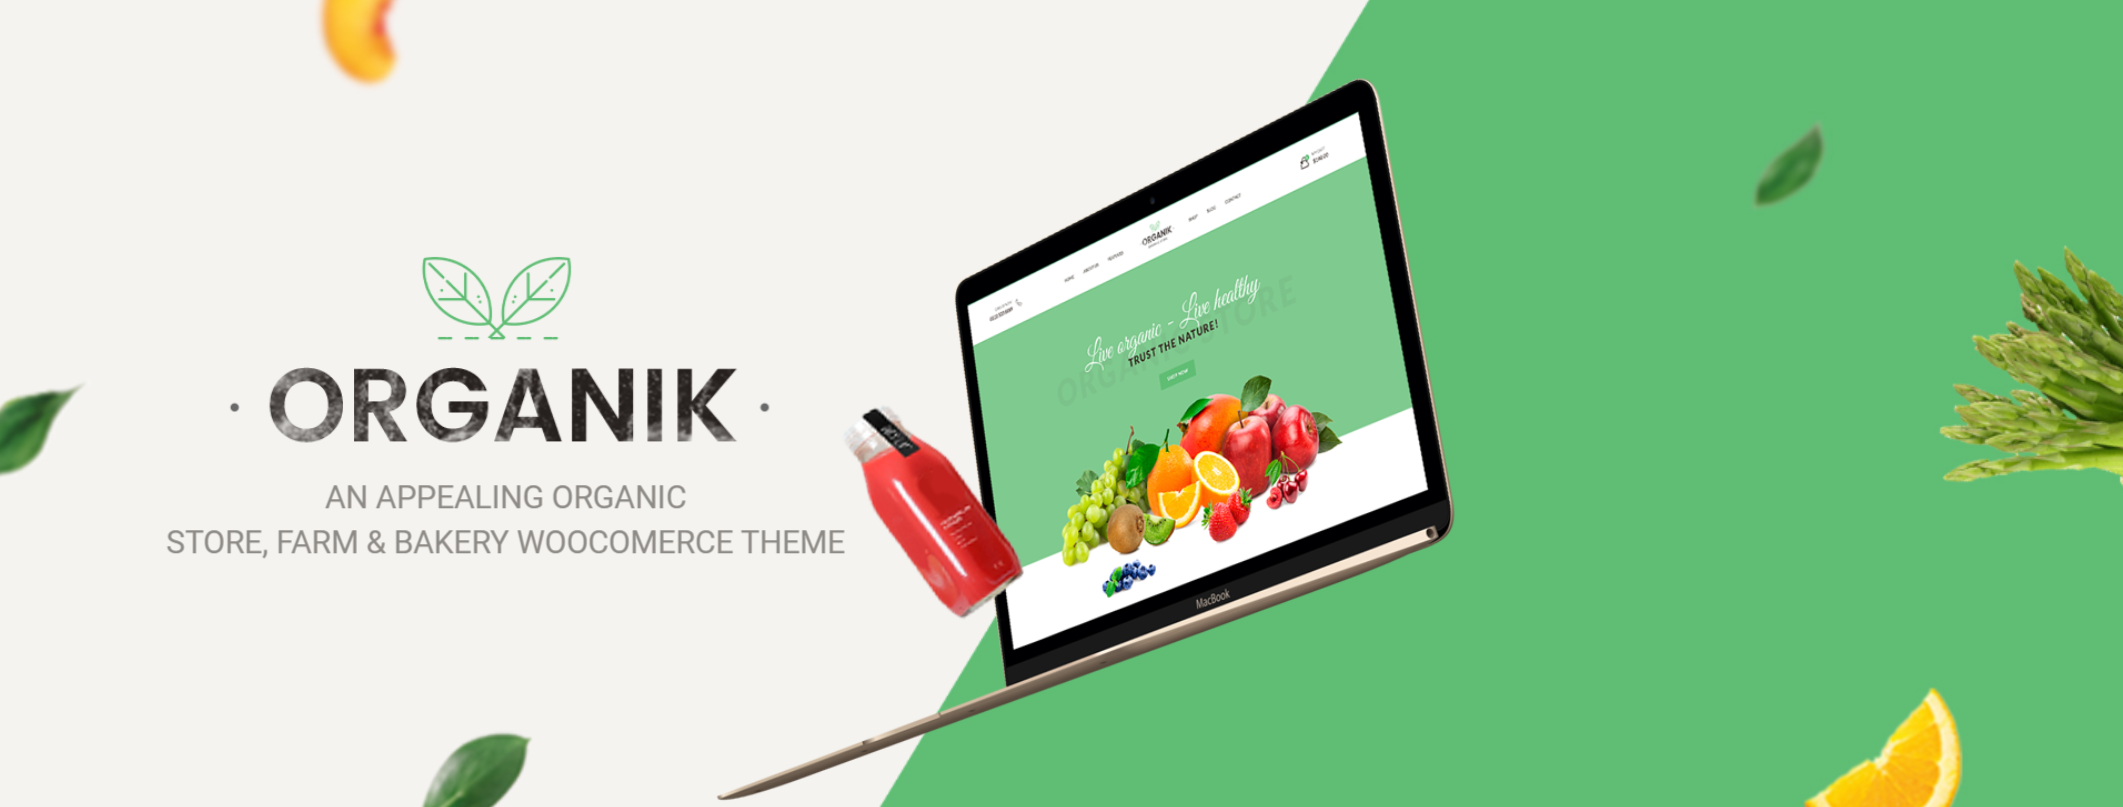 free download Organik - Organic Food Store WordPress Theme nulled